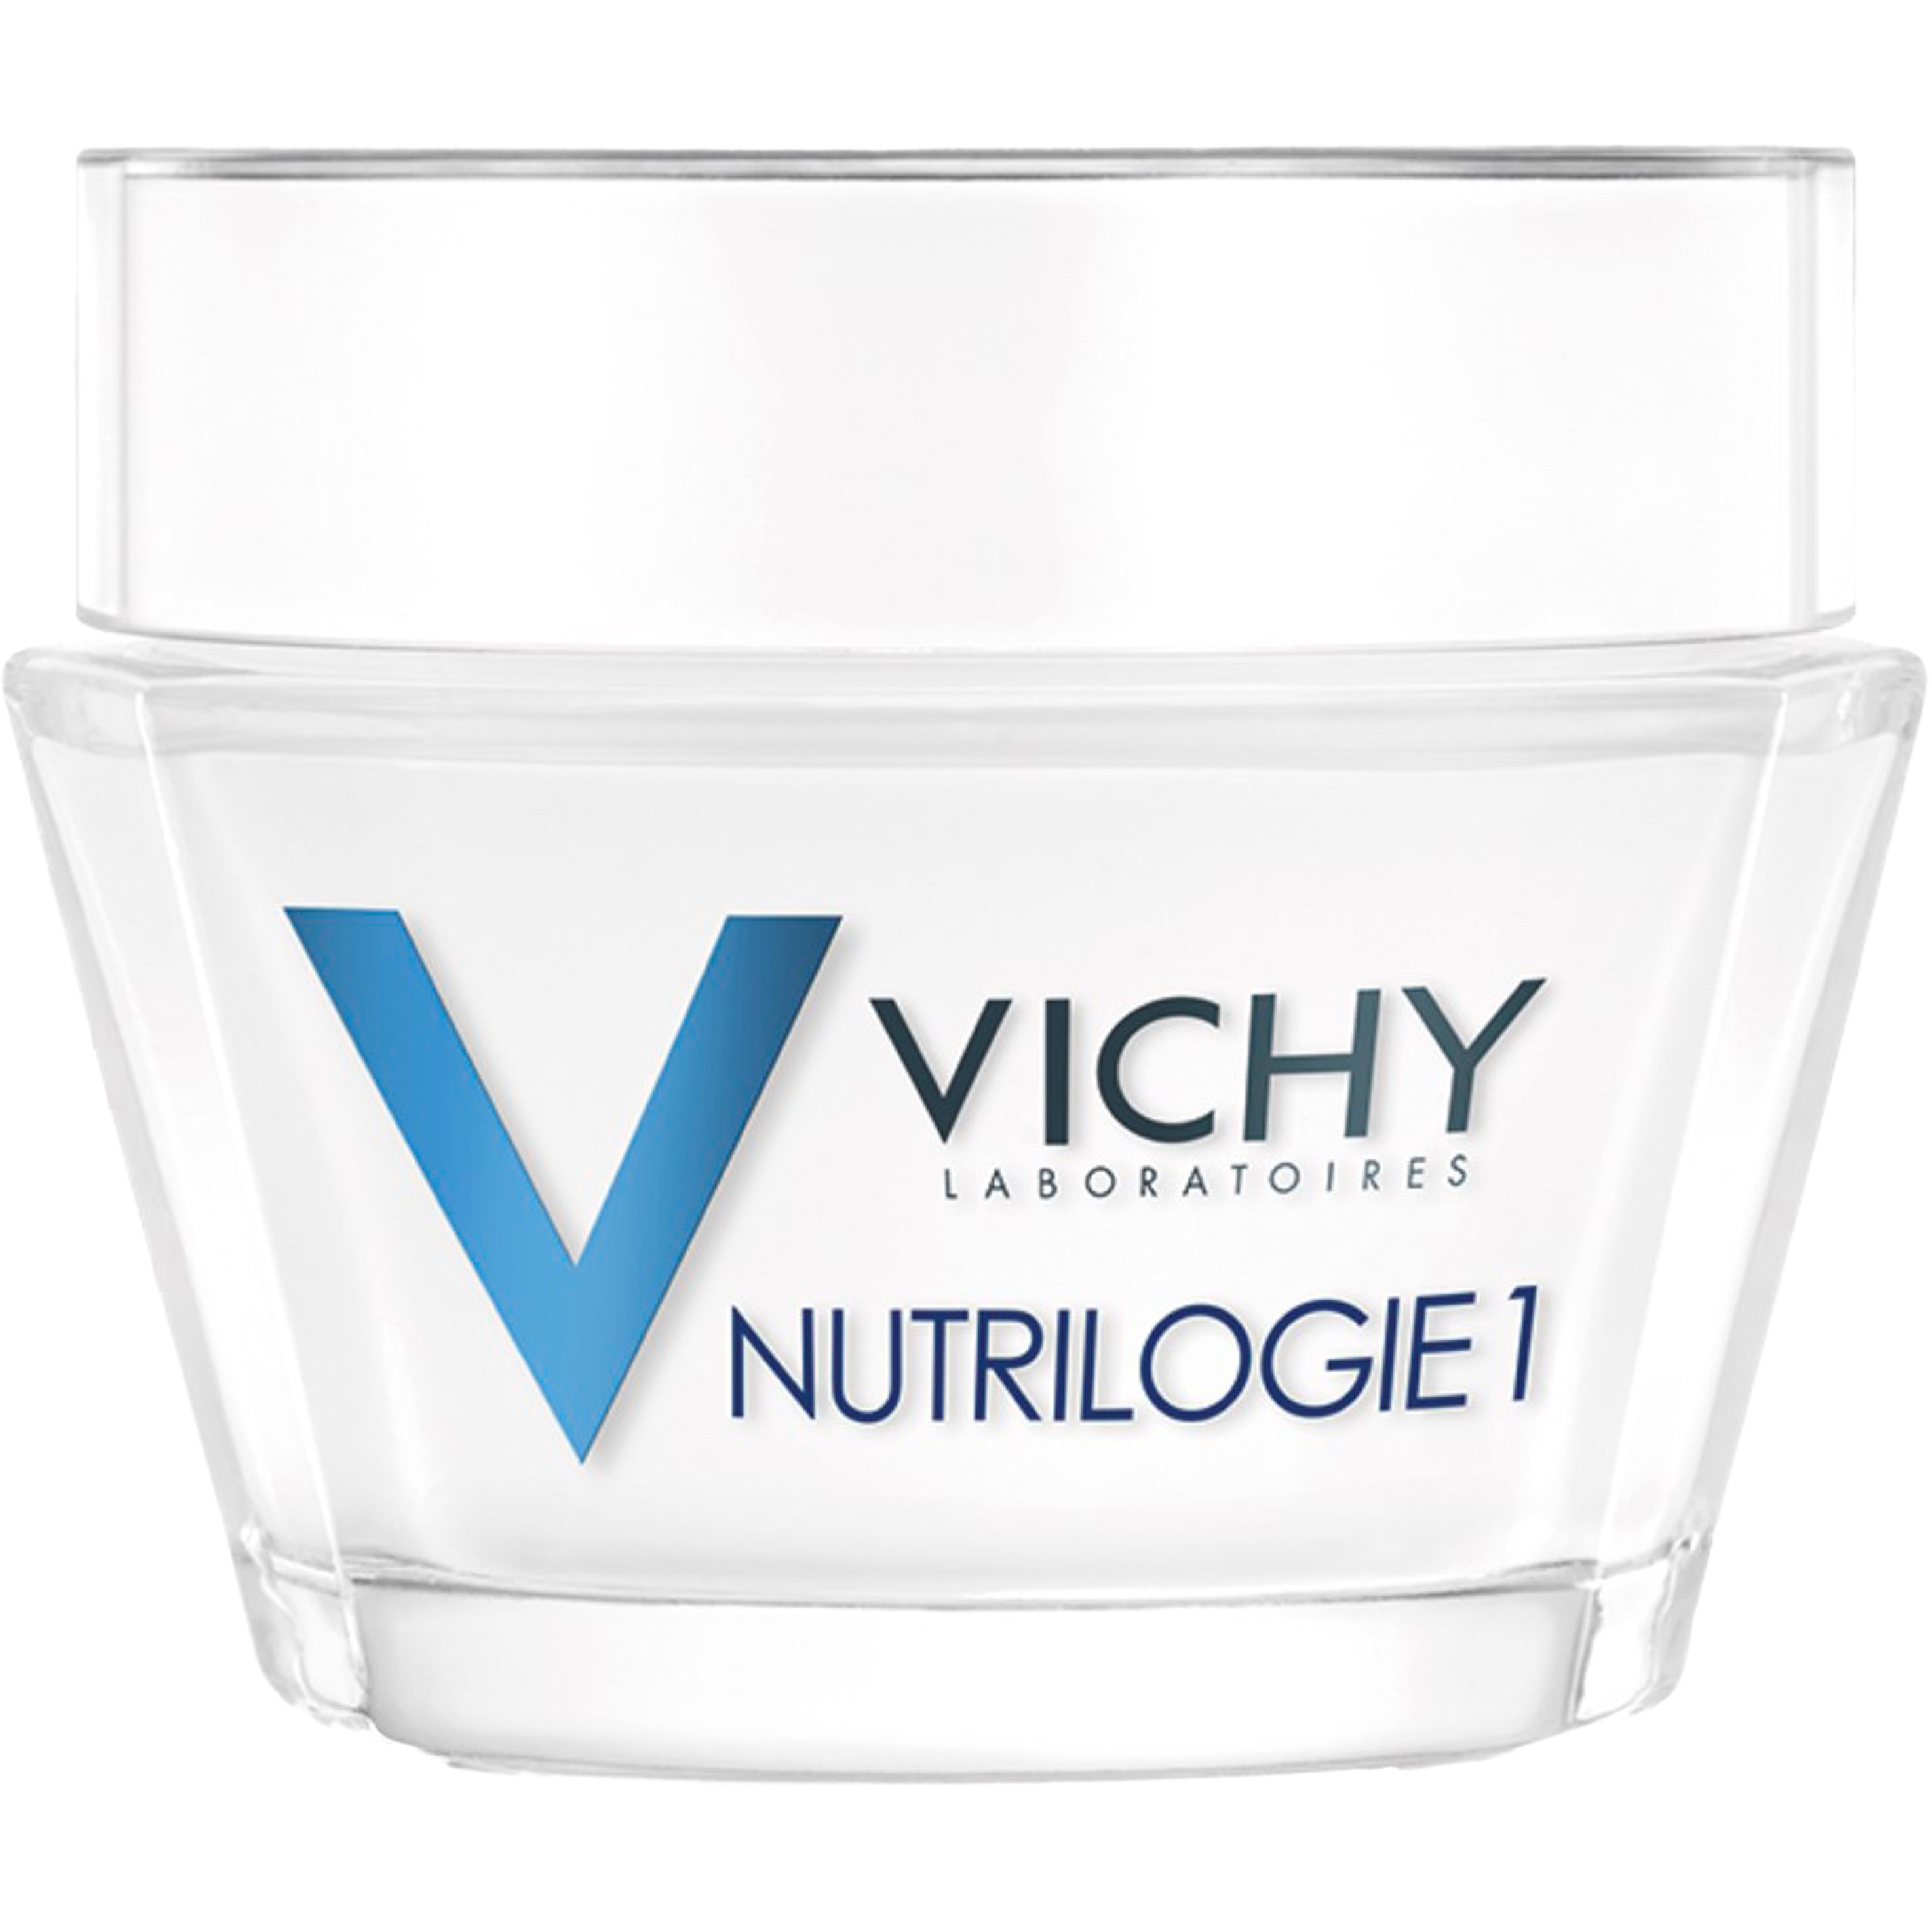 Bilde av Vichy Nutrilogie 1 Face Cream 50 Ml